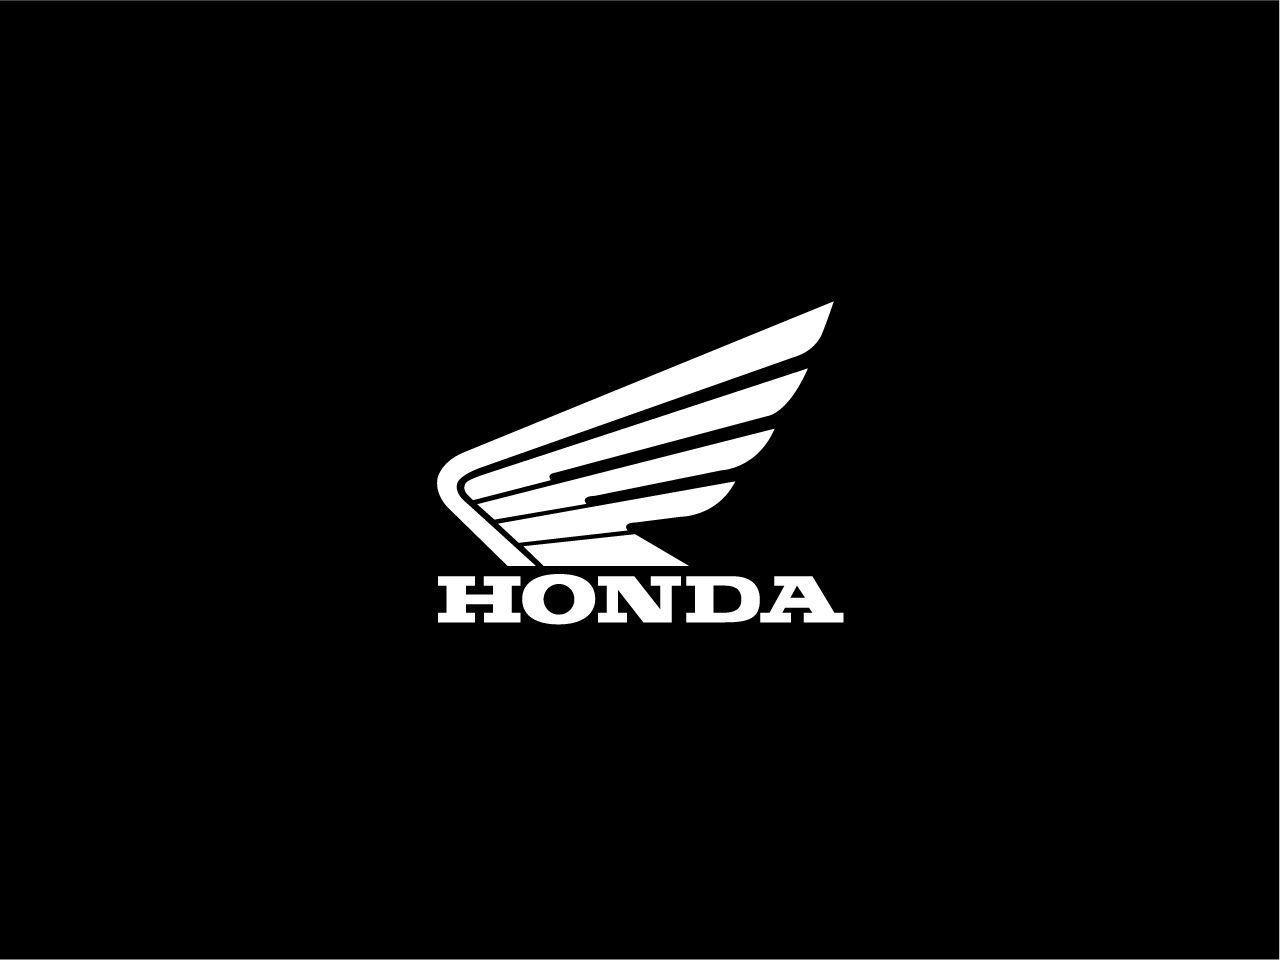 Honda Emblem Backgrounds - Wallpaper Cave